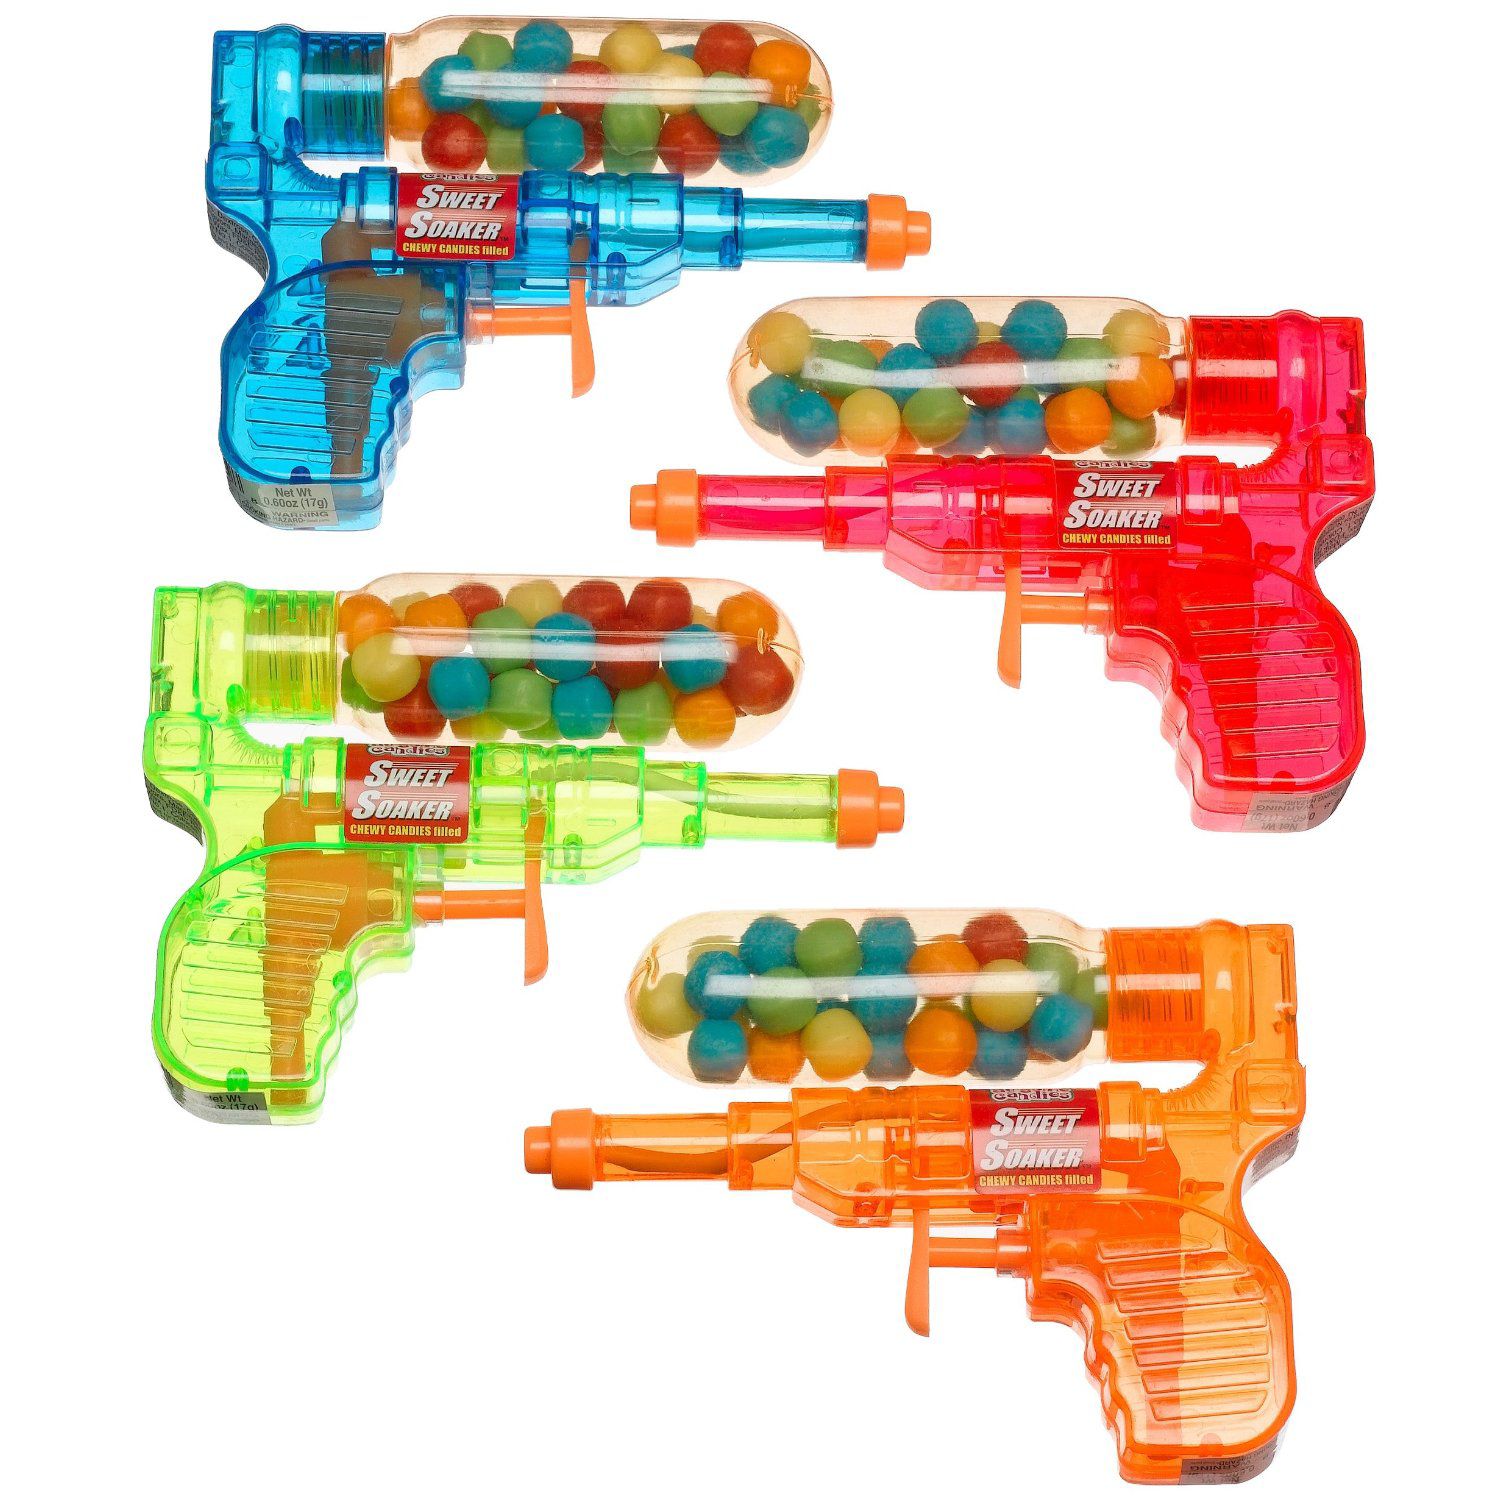 Au'some Candy Sweet Soaker Toy Gun, 0.6 oz